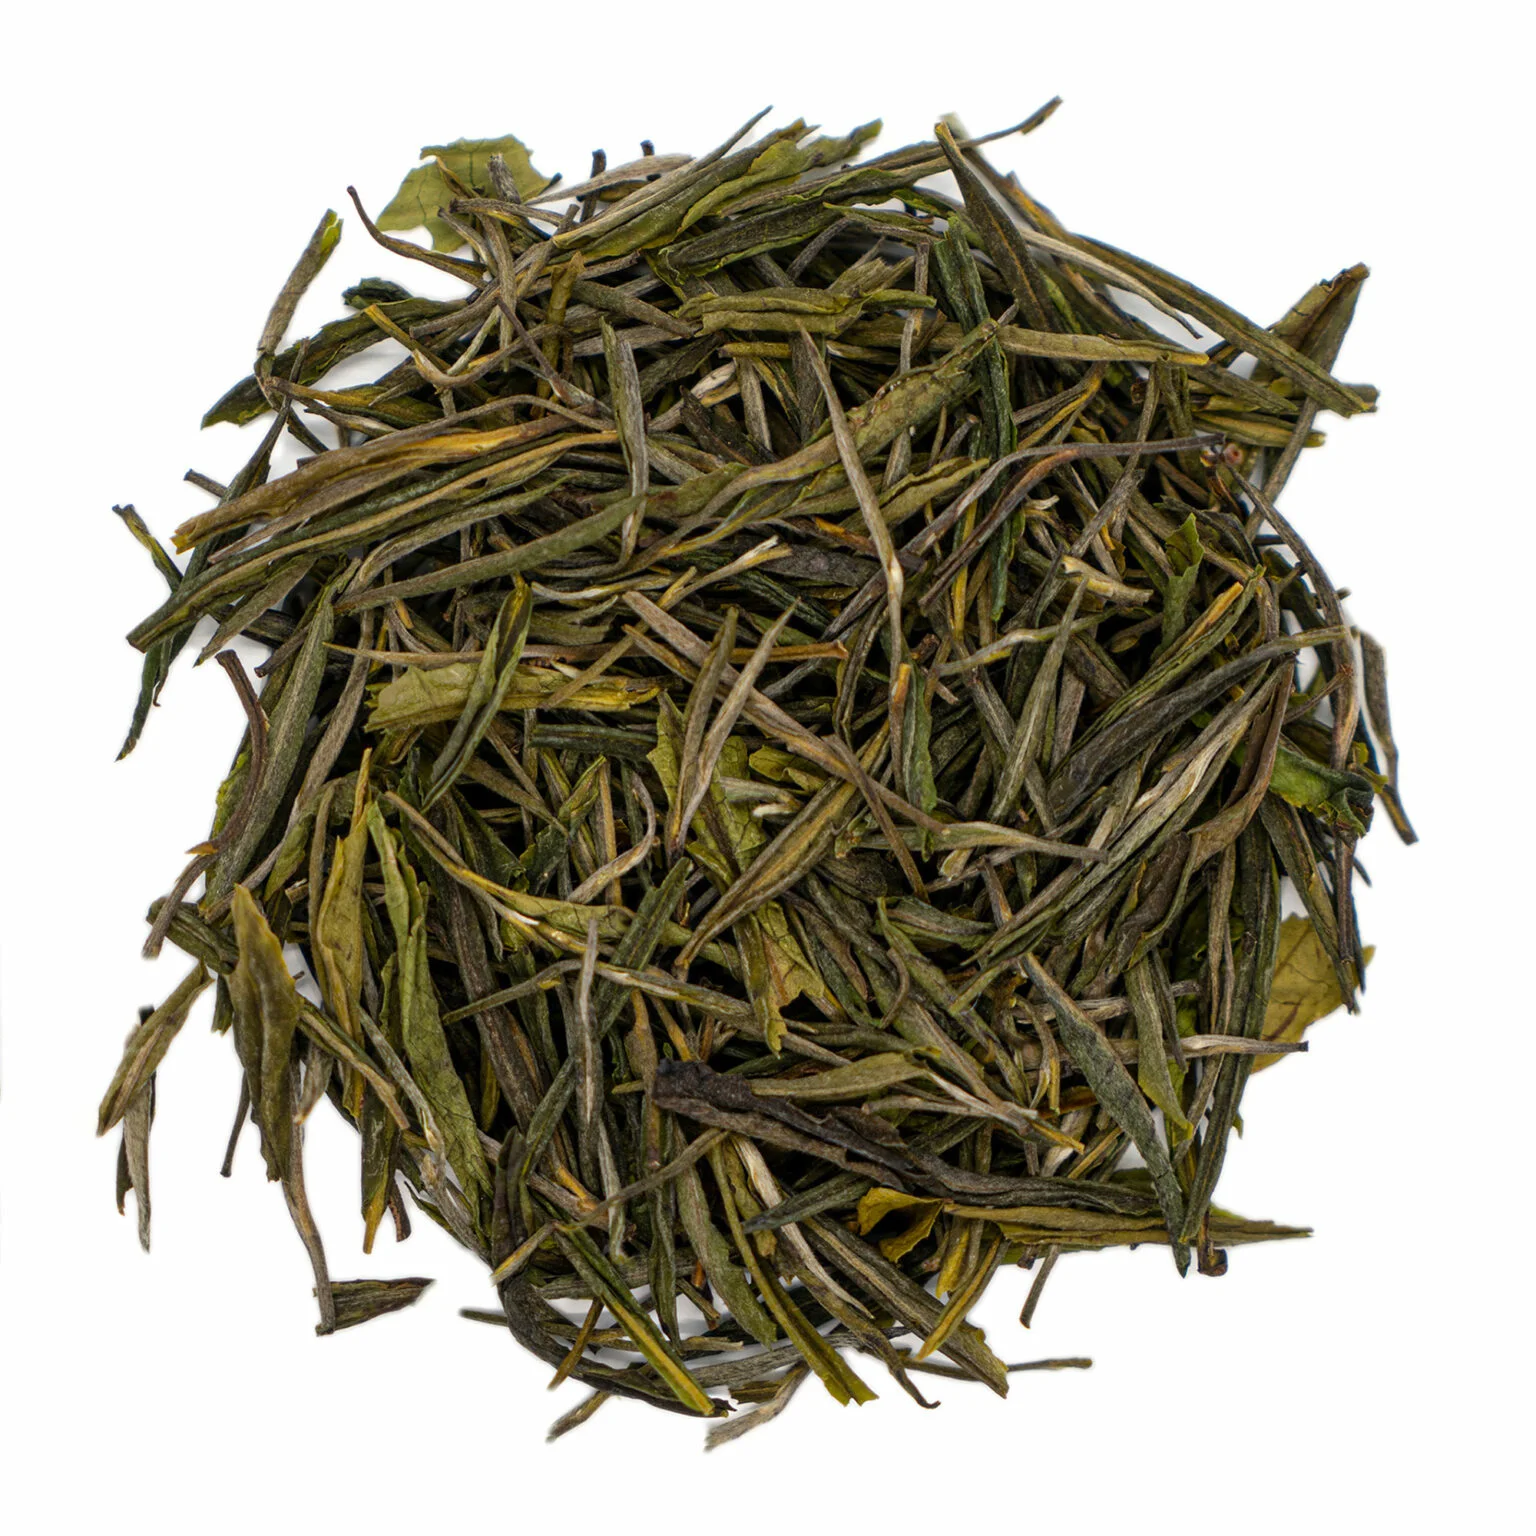 Herbata South India Nilgiri Slender: Wyjątkowy smak i aromat